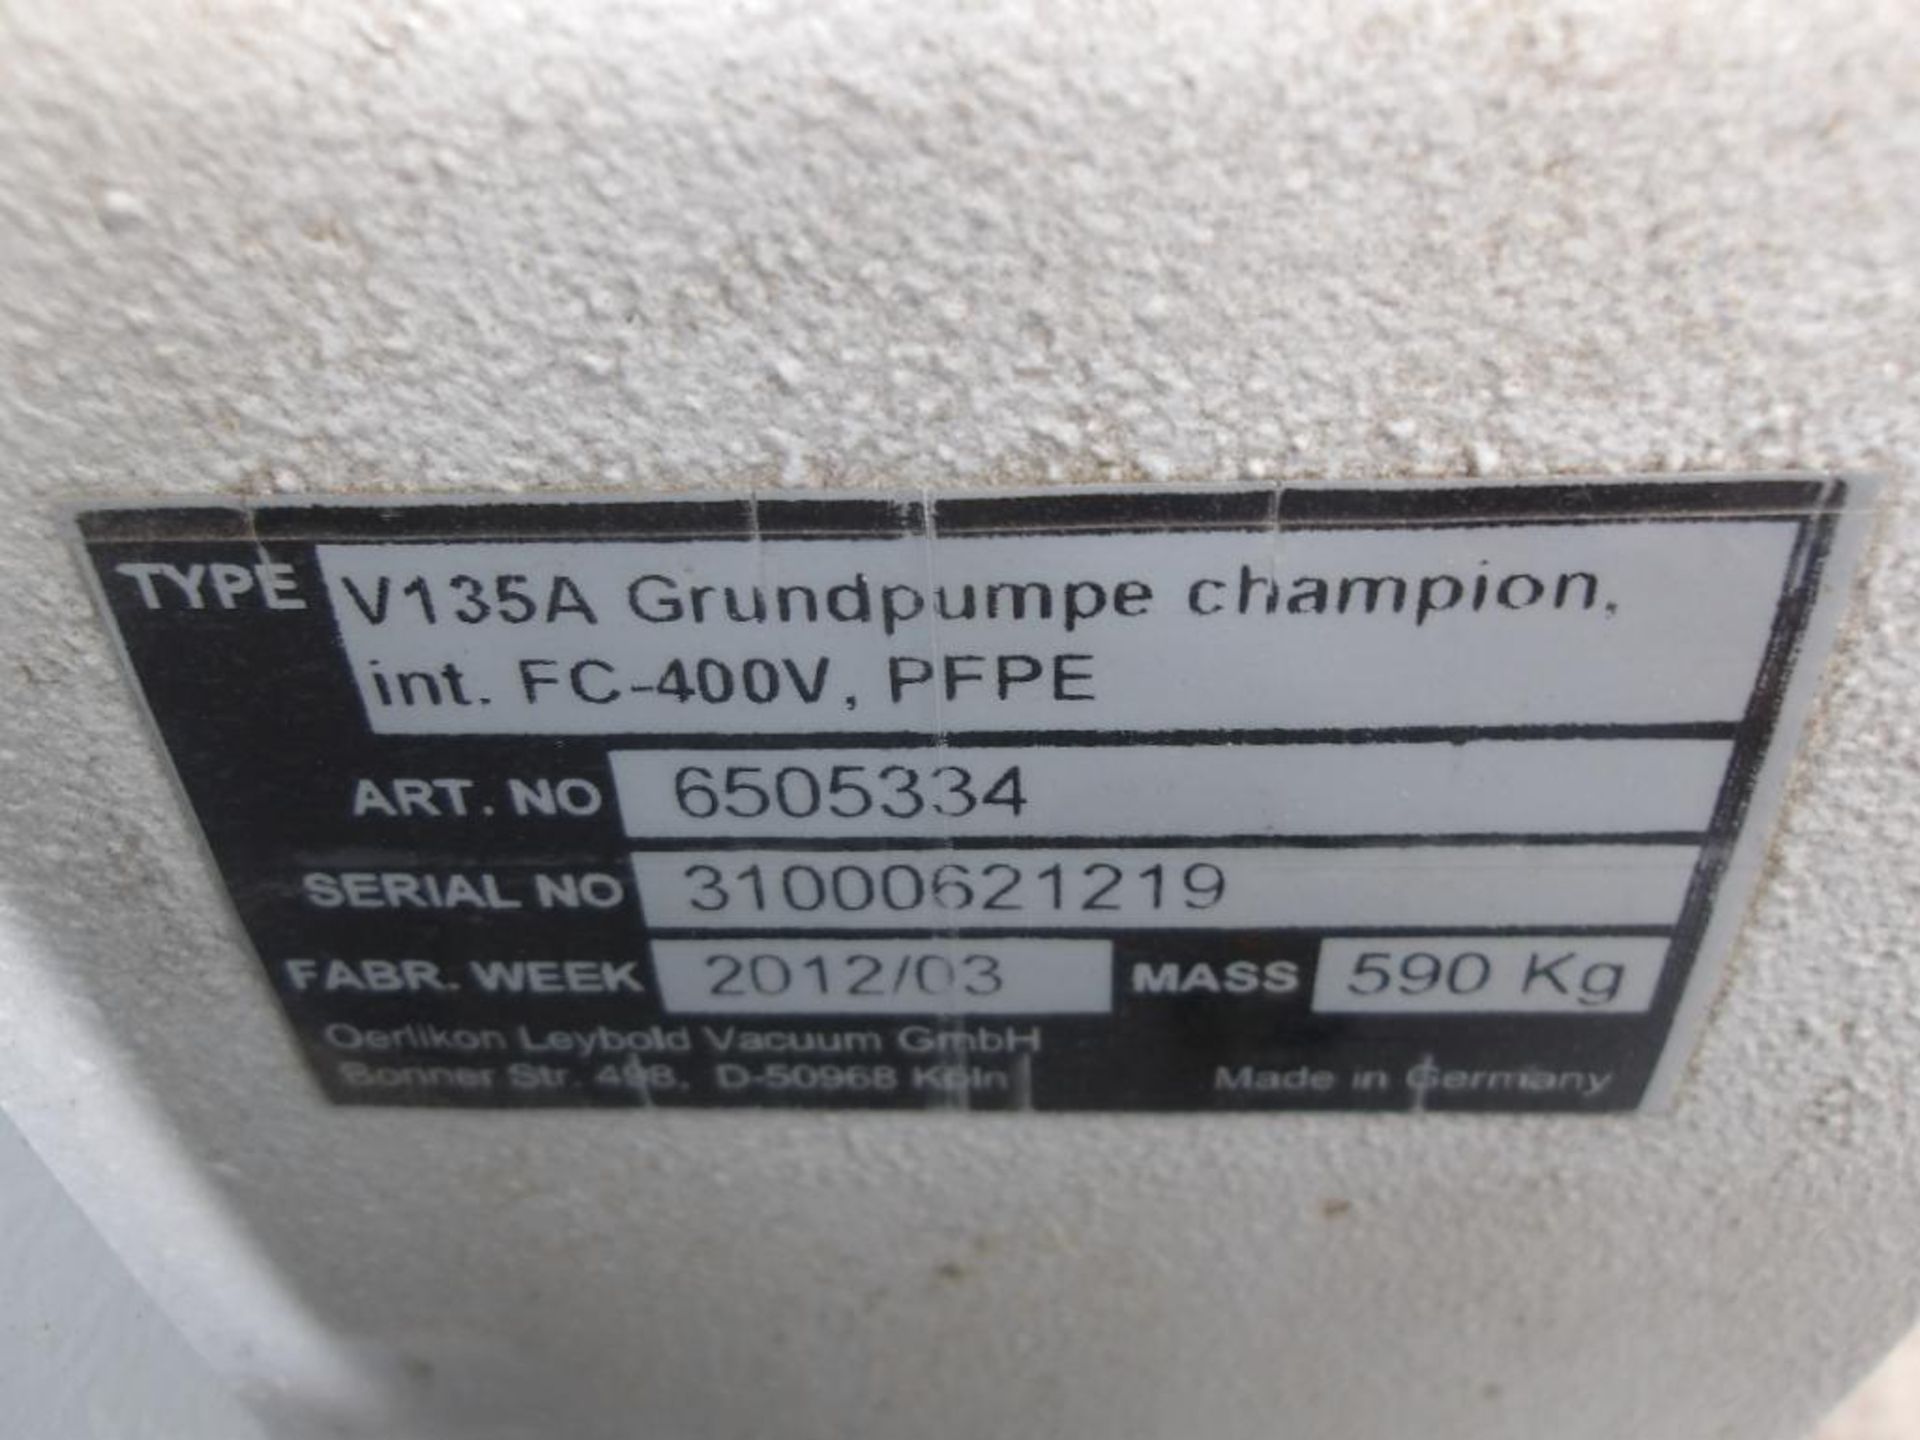 Oerlikon Leybold Sanitary Vacuum Pump, Type V135A, 400 V, Mass: 590 Kg (Used) - Image 2 of 4